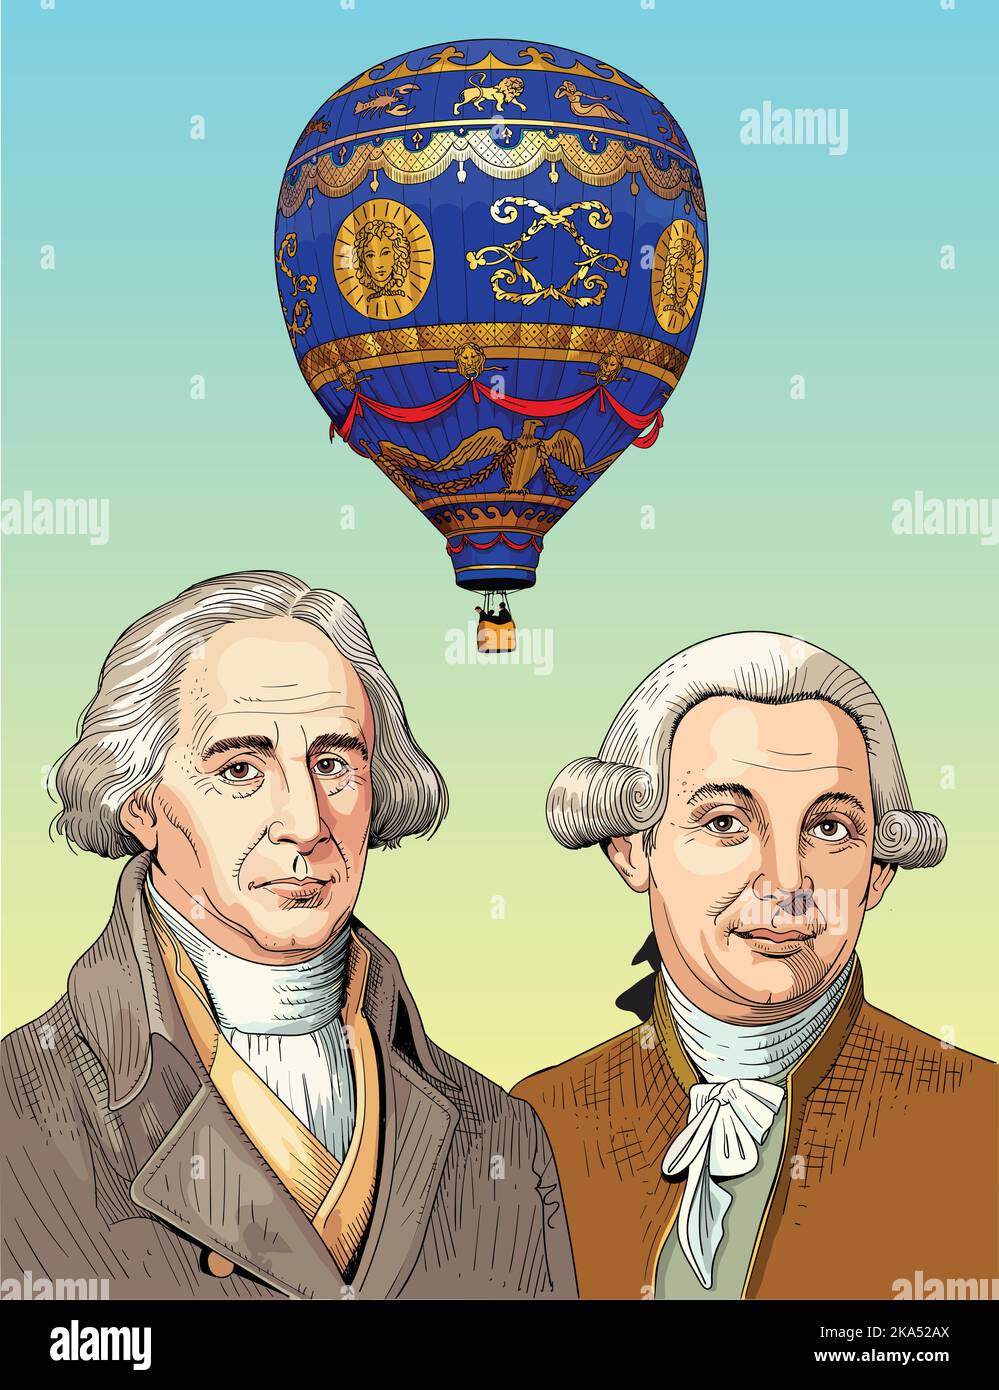 Joseph-Michel Montgolfier e Jacques-Étienne Montgolfier furono pionieri dell'aviazione, pallonisti e produttori di carta del comune Annonay in Ardè Illustrazione Vettoriale